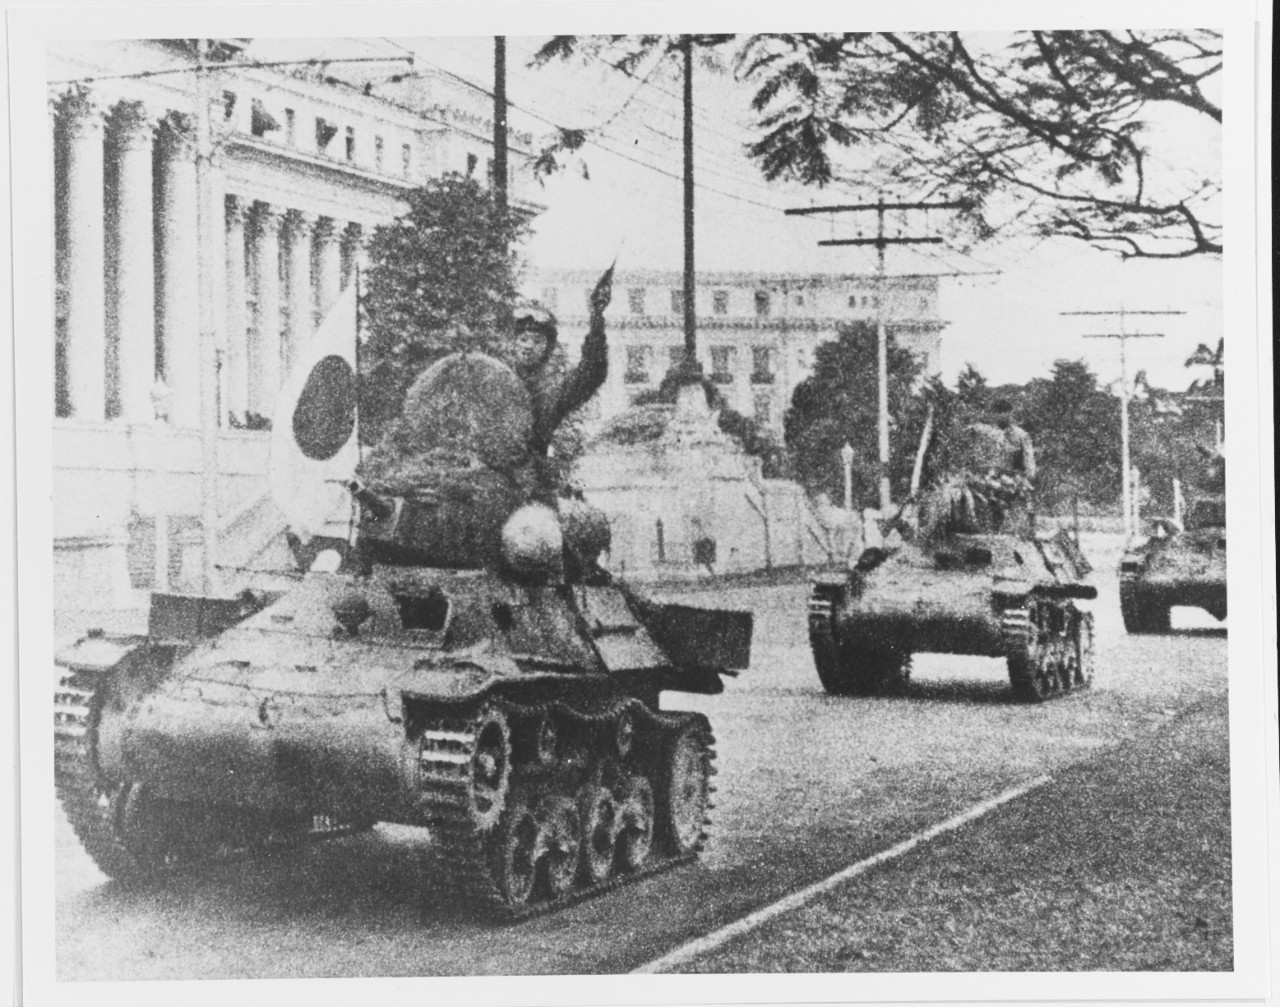 Philippines invasion, 1941-1942.